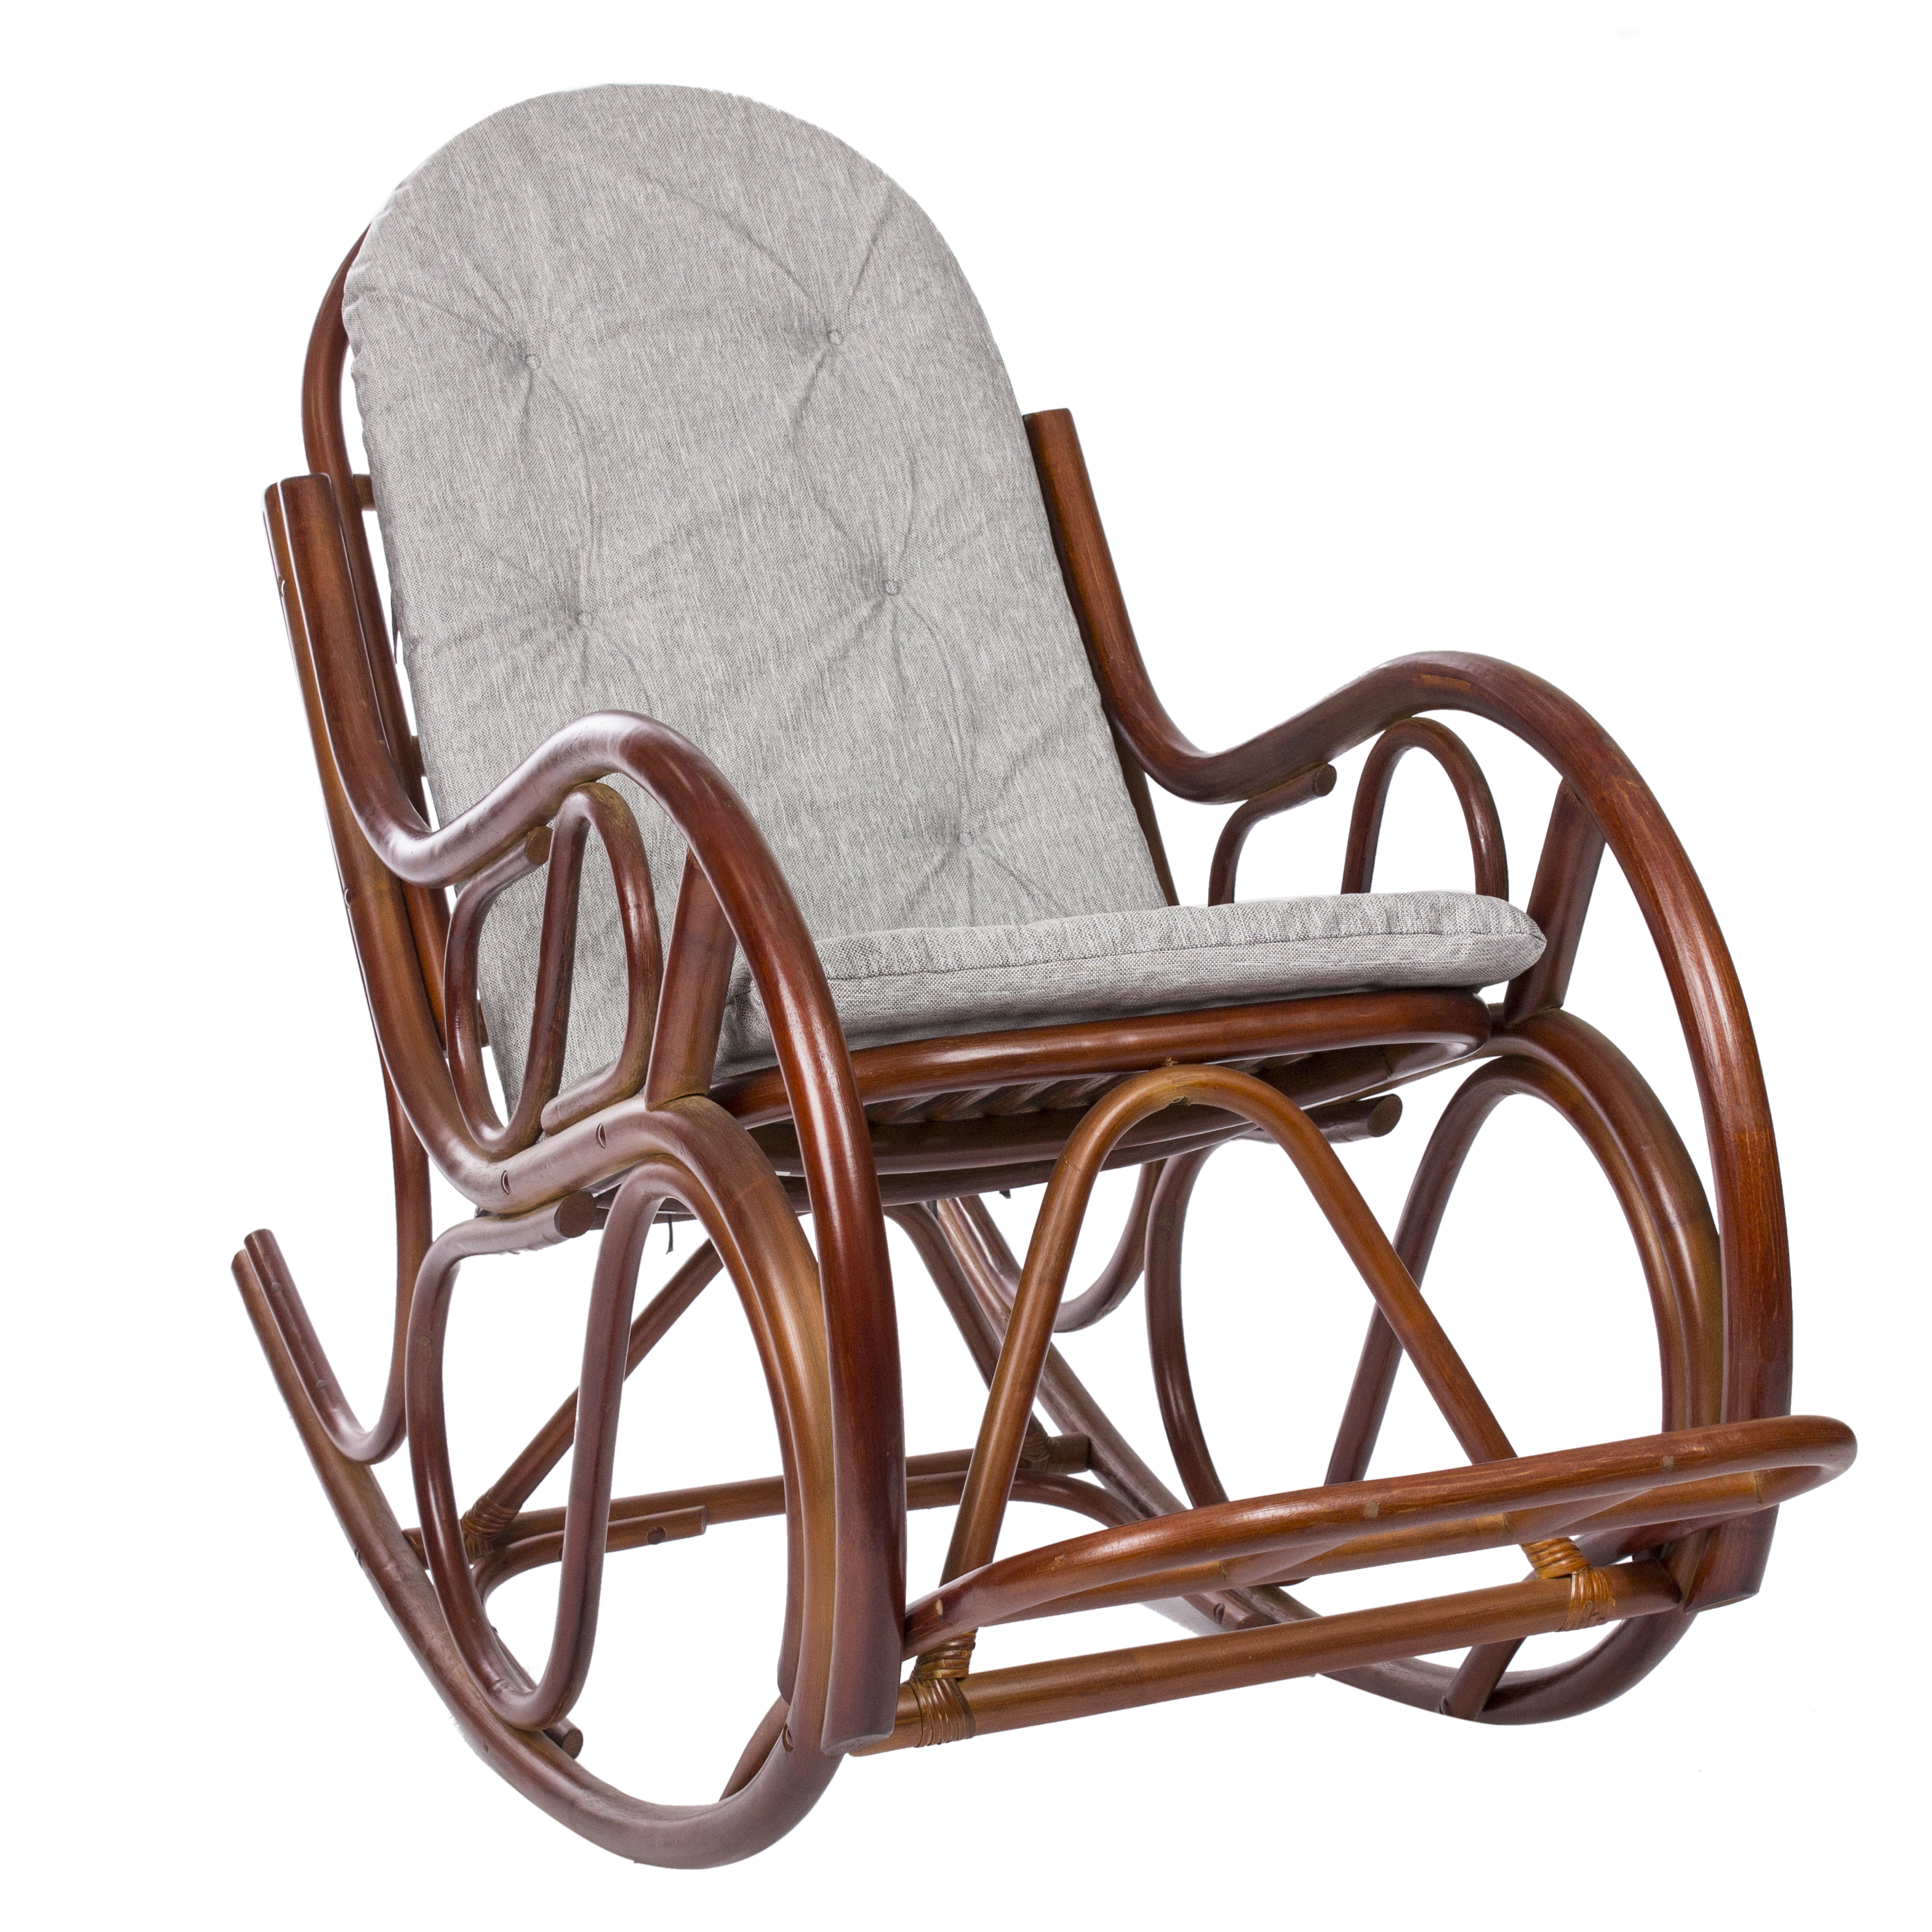 Кресло качалка купить от производителя. Mi-001 кресло-качалка Classic, с подушкой. Кресло-качалка с подушкой tg0195c. Кресло качалка Rona Rotang. Кресло-качалка Swivel Rocker с подушкой.